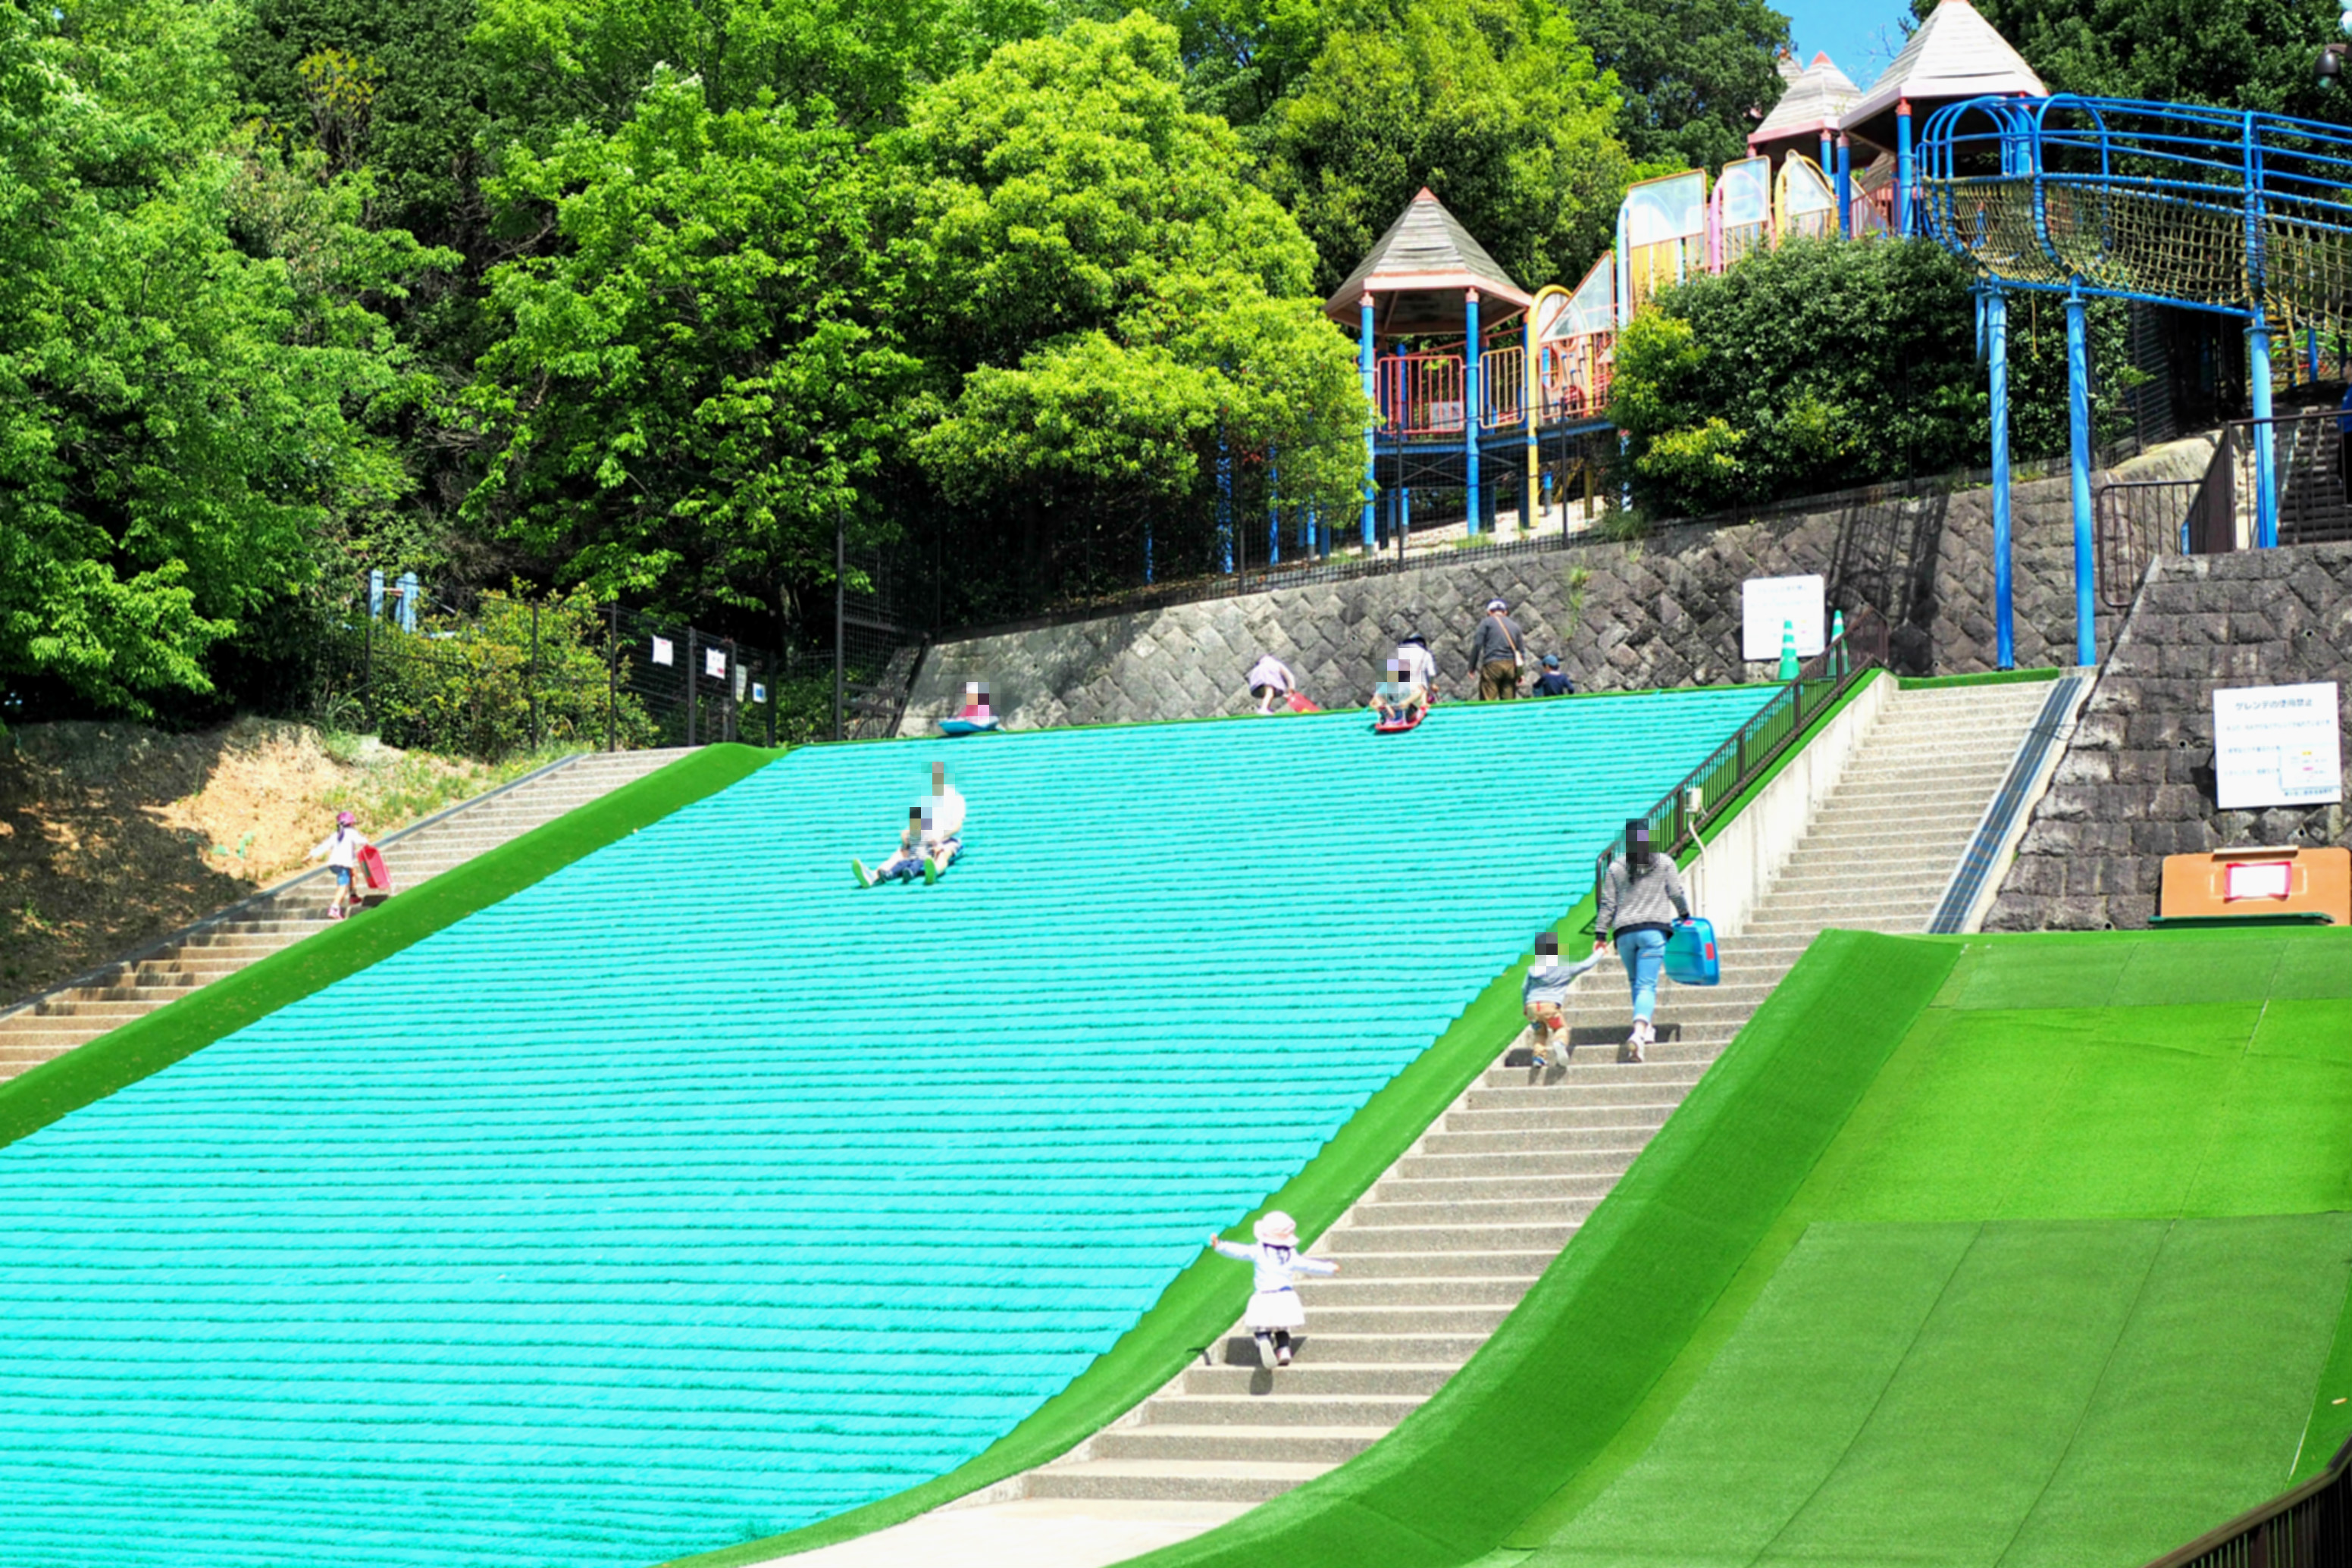 東平尾公園の草スキーが子供たちに大人気 アスレチックや遊具も 福岡touch